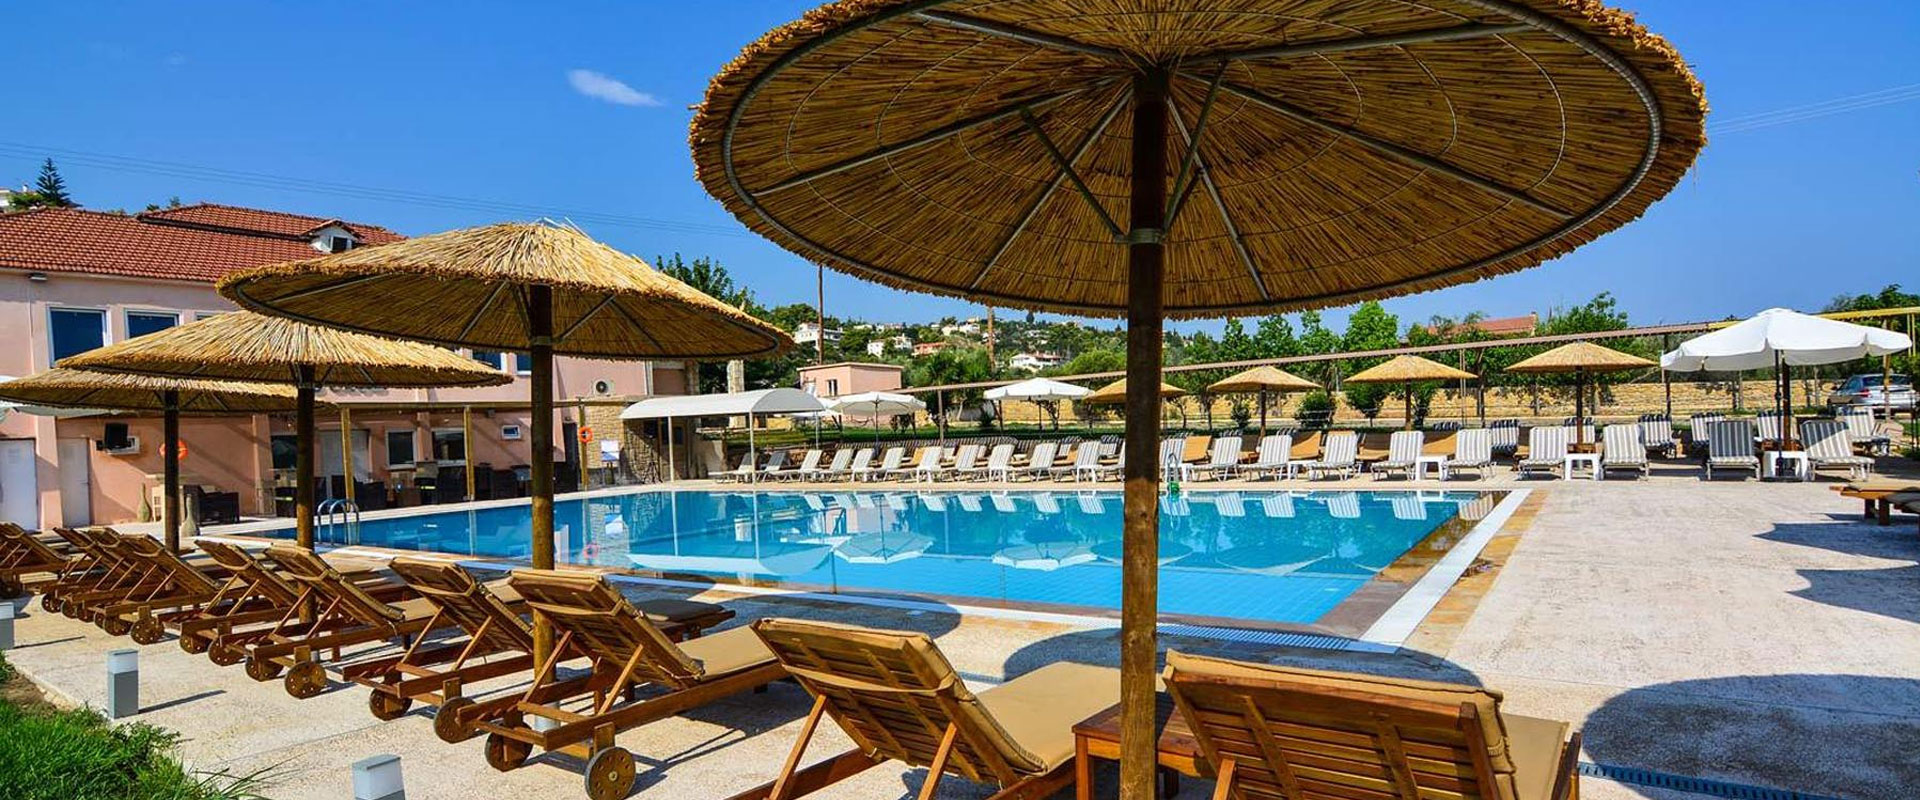 Προσφορά Διακοπών για το Ξενοδοχείο Amarynthos Resort στην Εύβοια